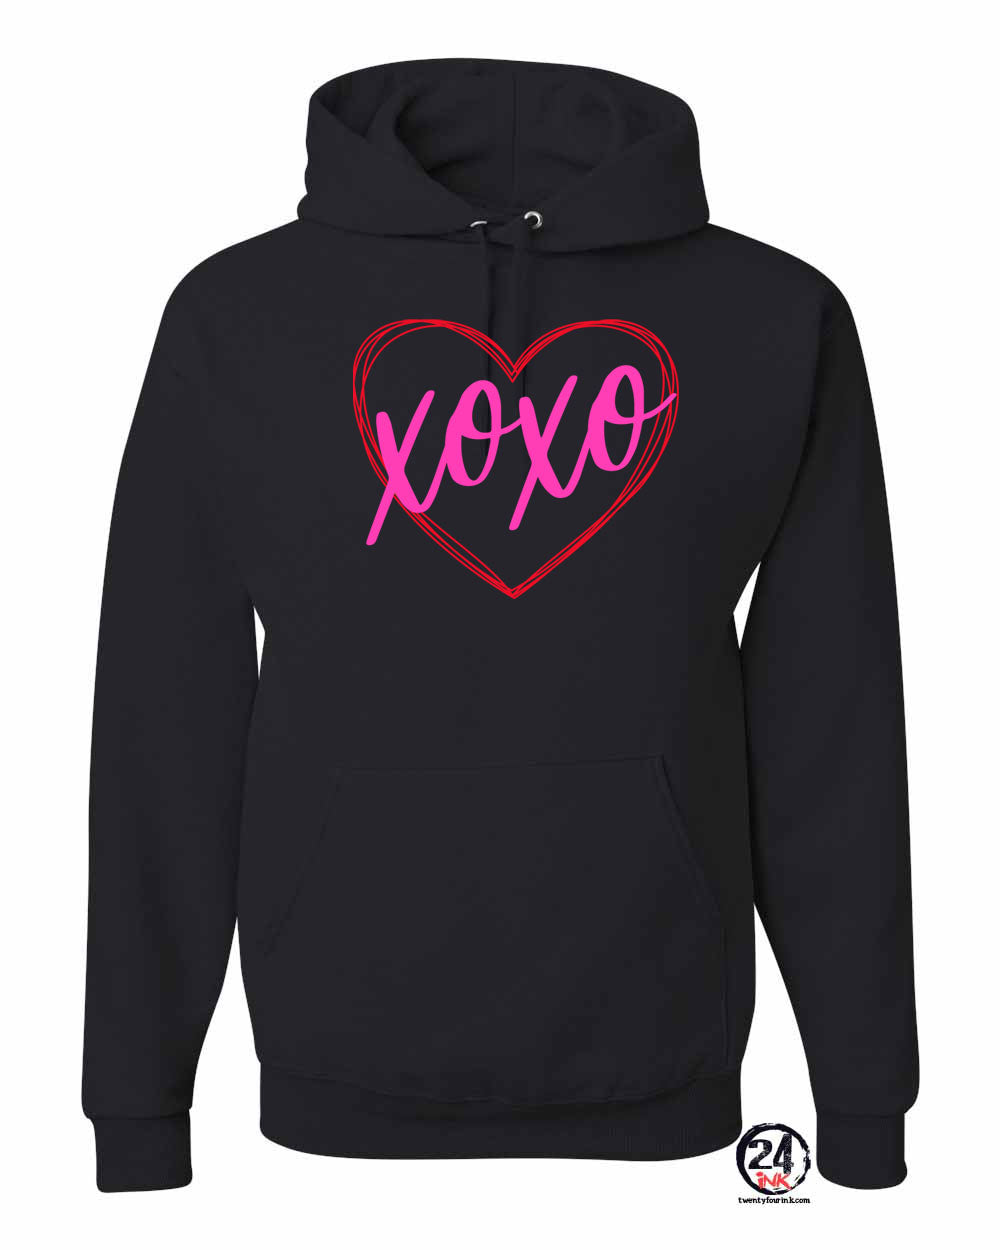 XOXO Heart Hooded Sweatshirt